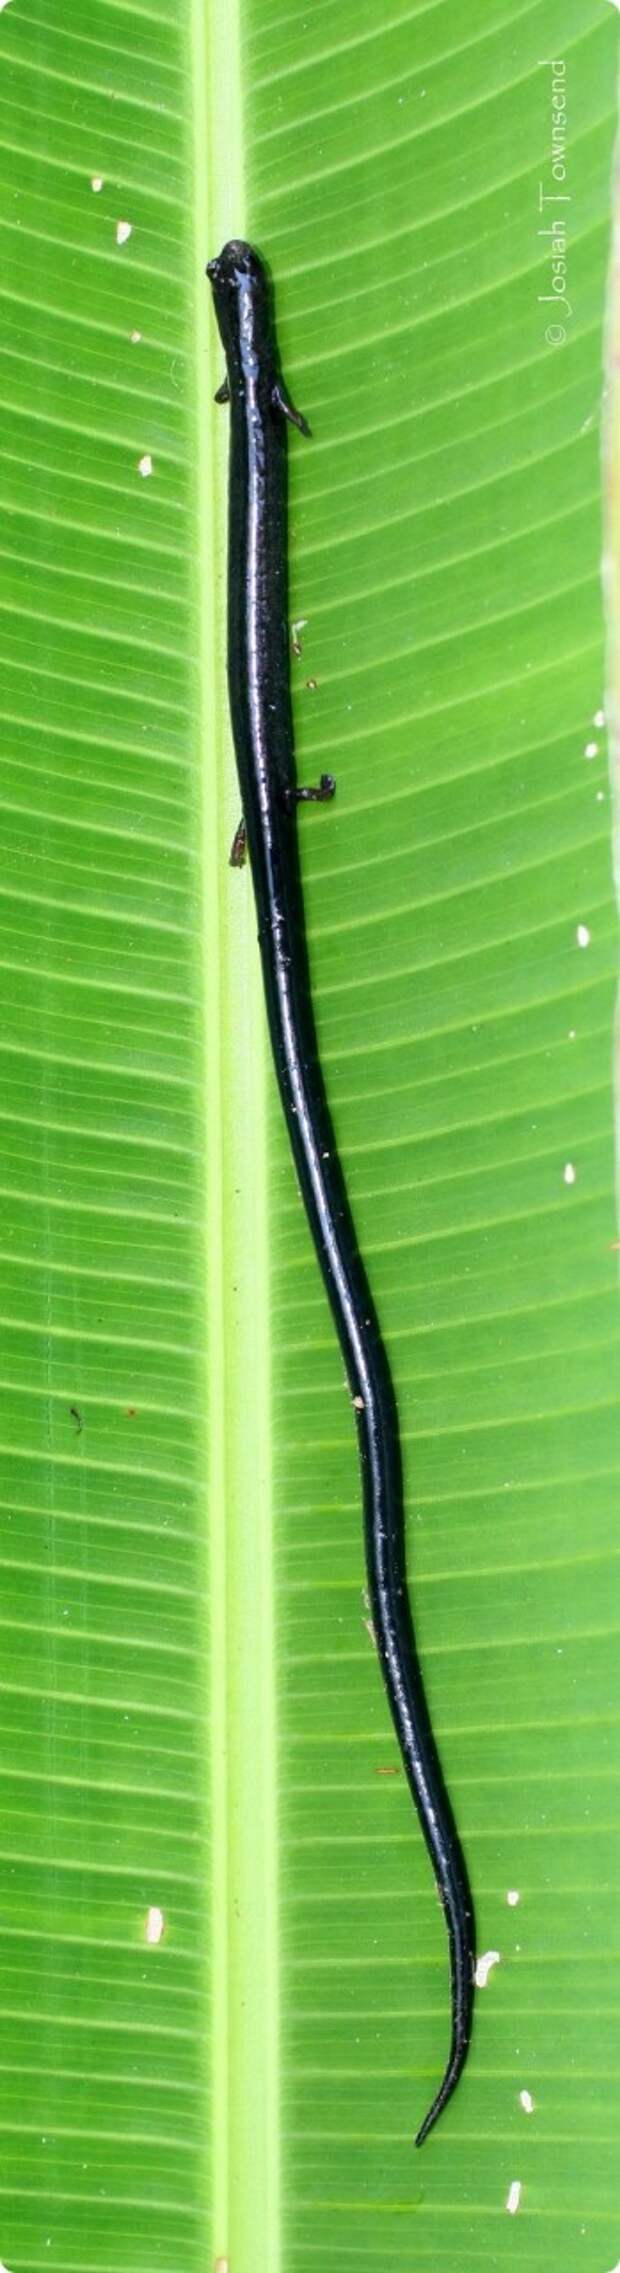 Веретеновидные саламандры (лат. Oedipina)